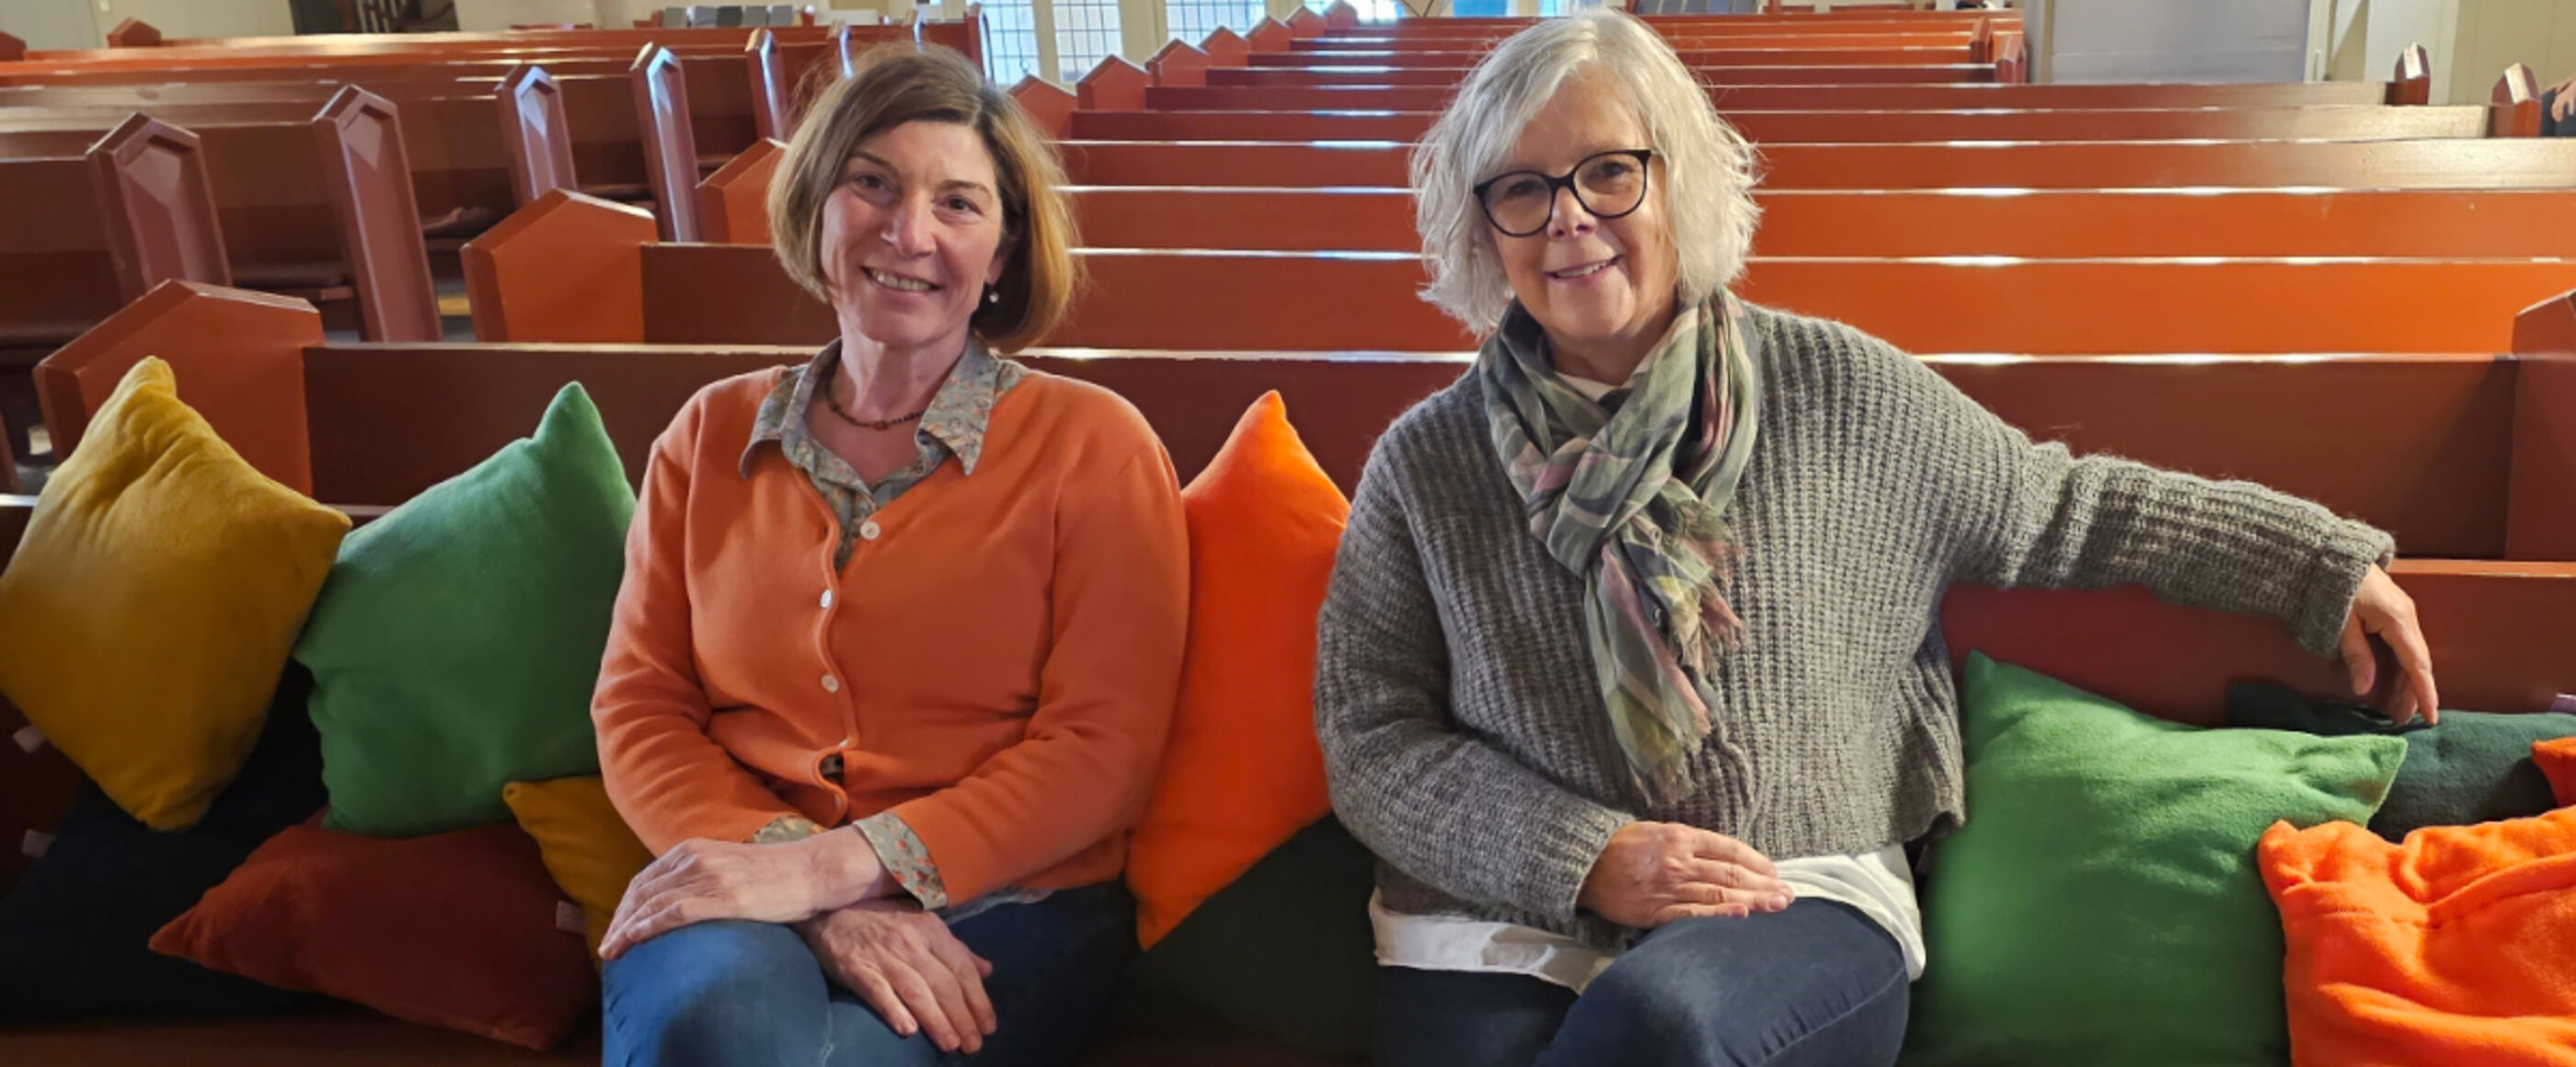 zwei Frauen sitzen auf Bänken mit bunten Sitzkissen in einer Kirche